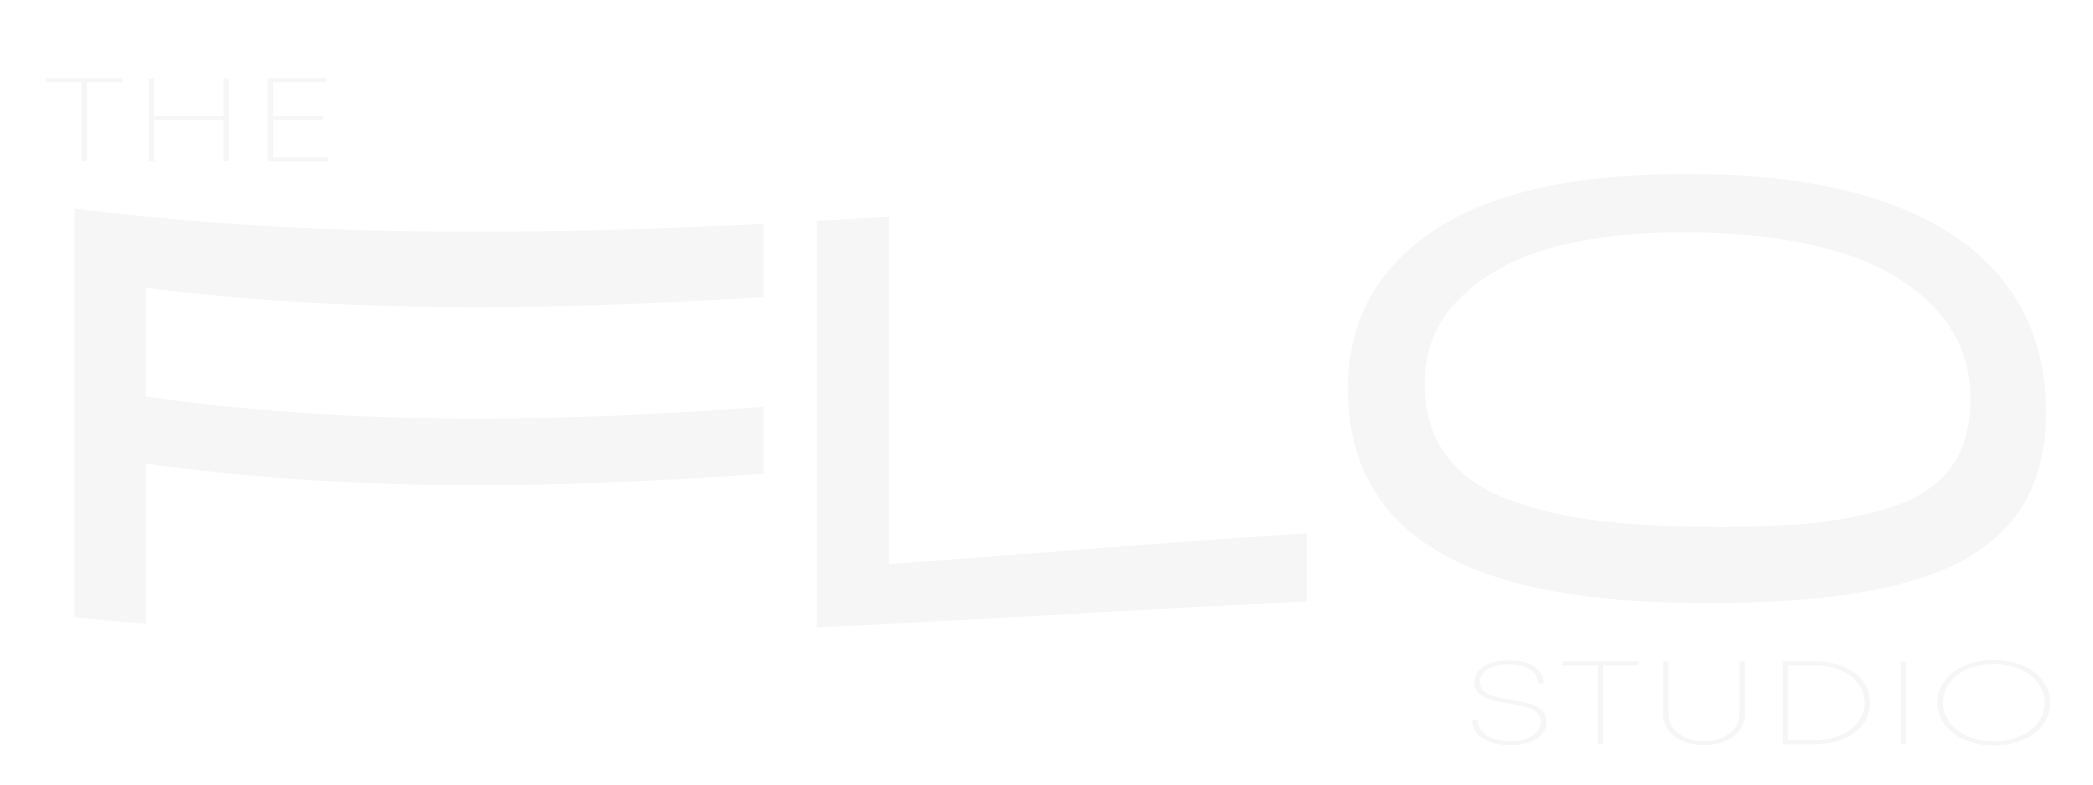 The Flo Studio